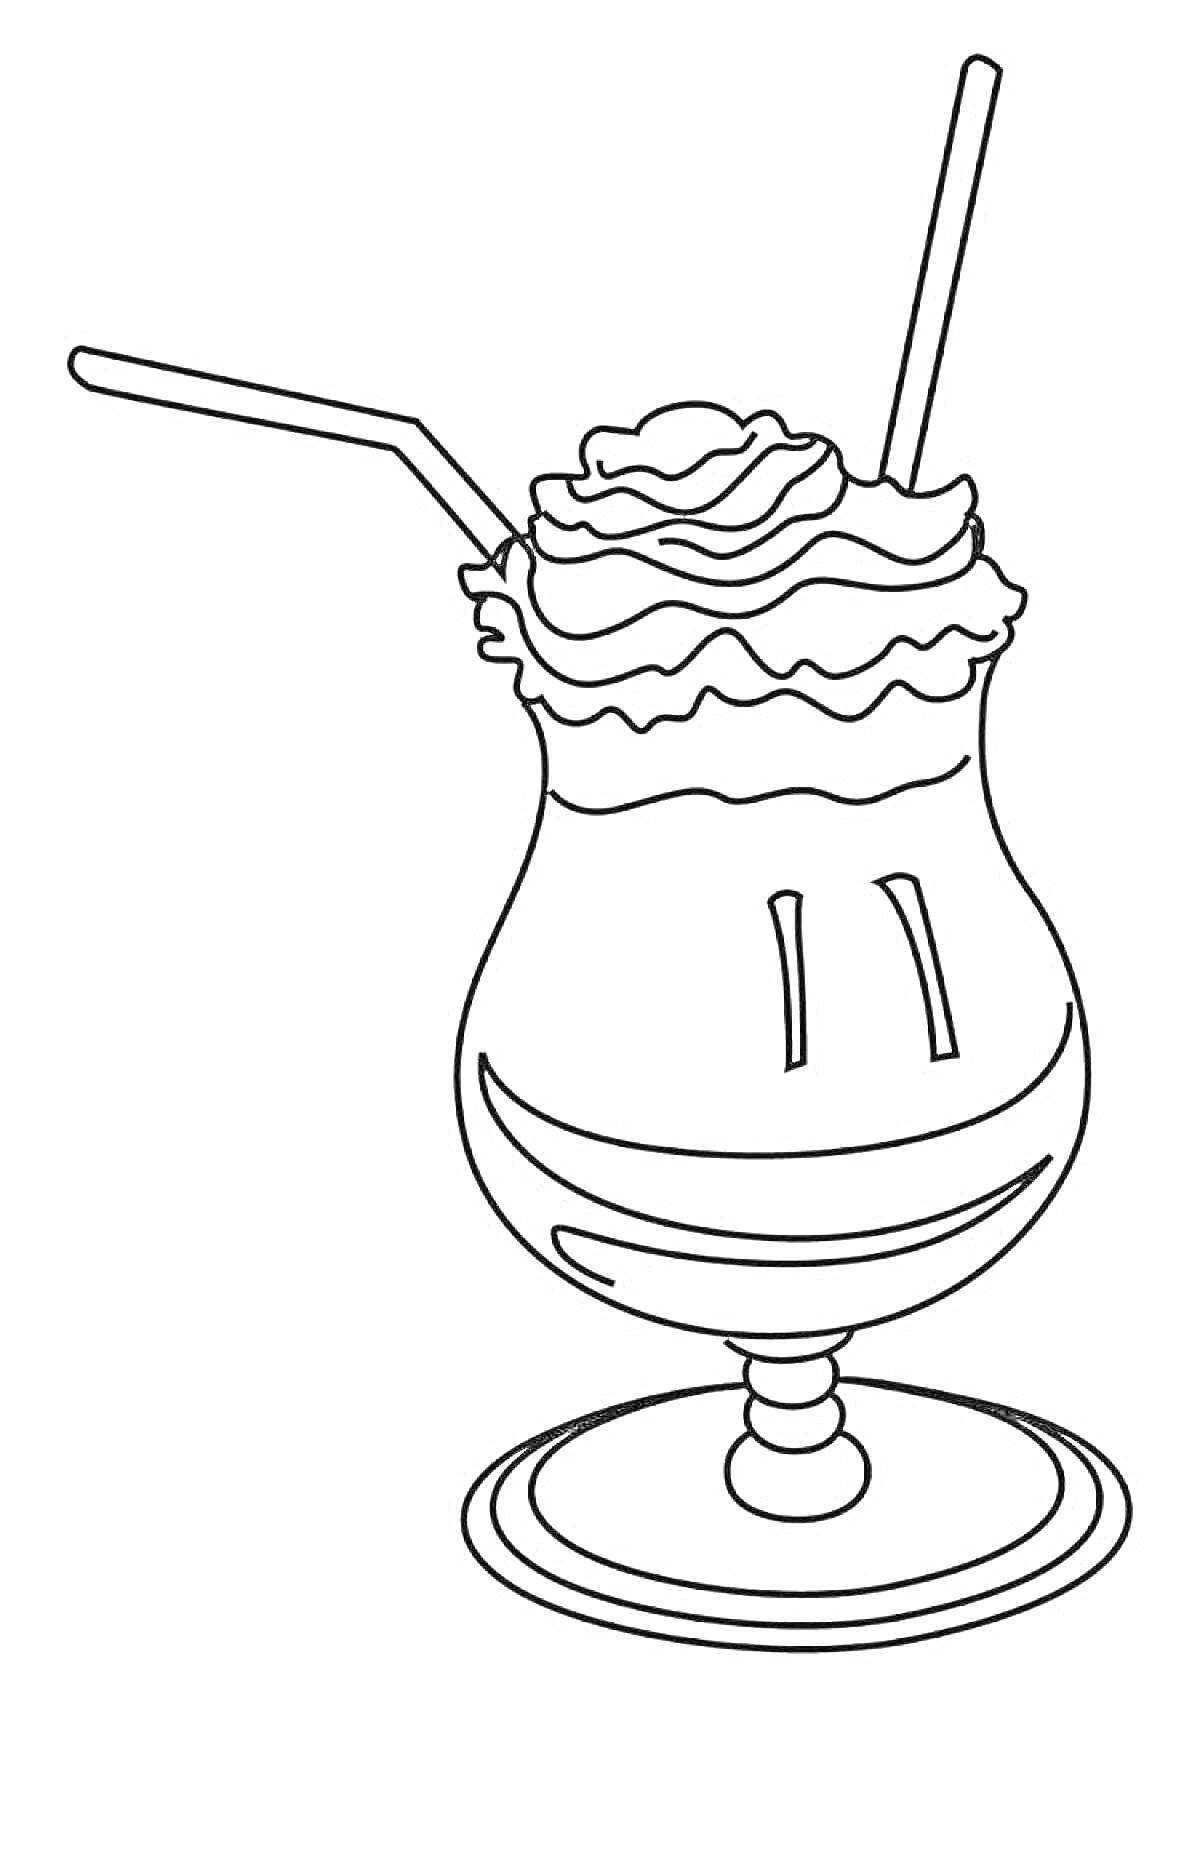 Раскраска Коктейль в бокале с трубочкой и взбитыми сливками